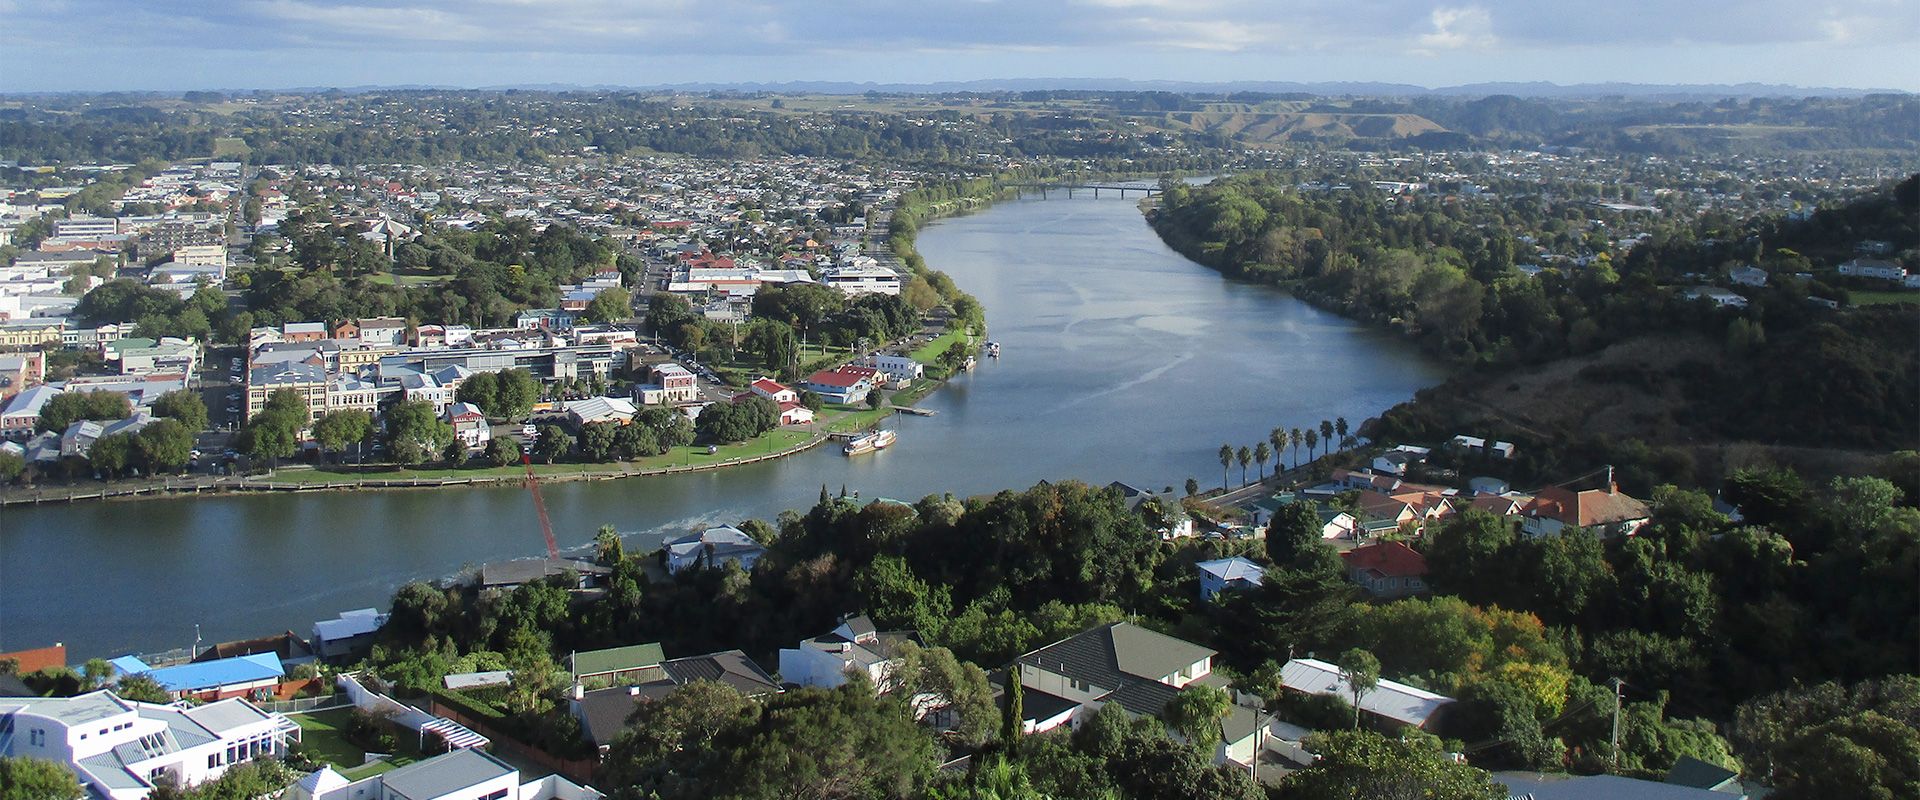 Whanganui city